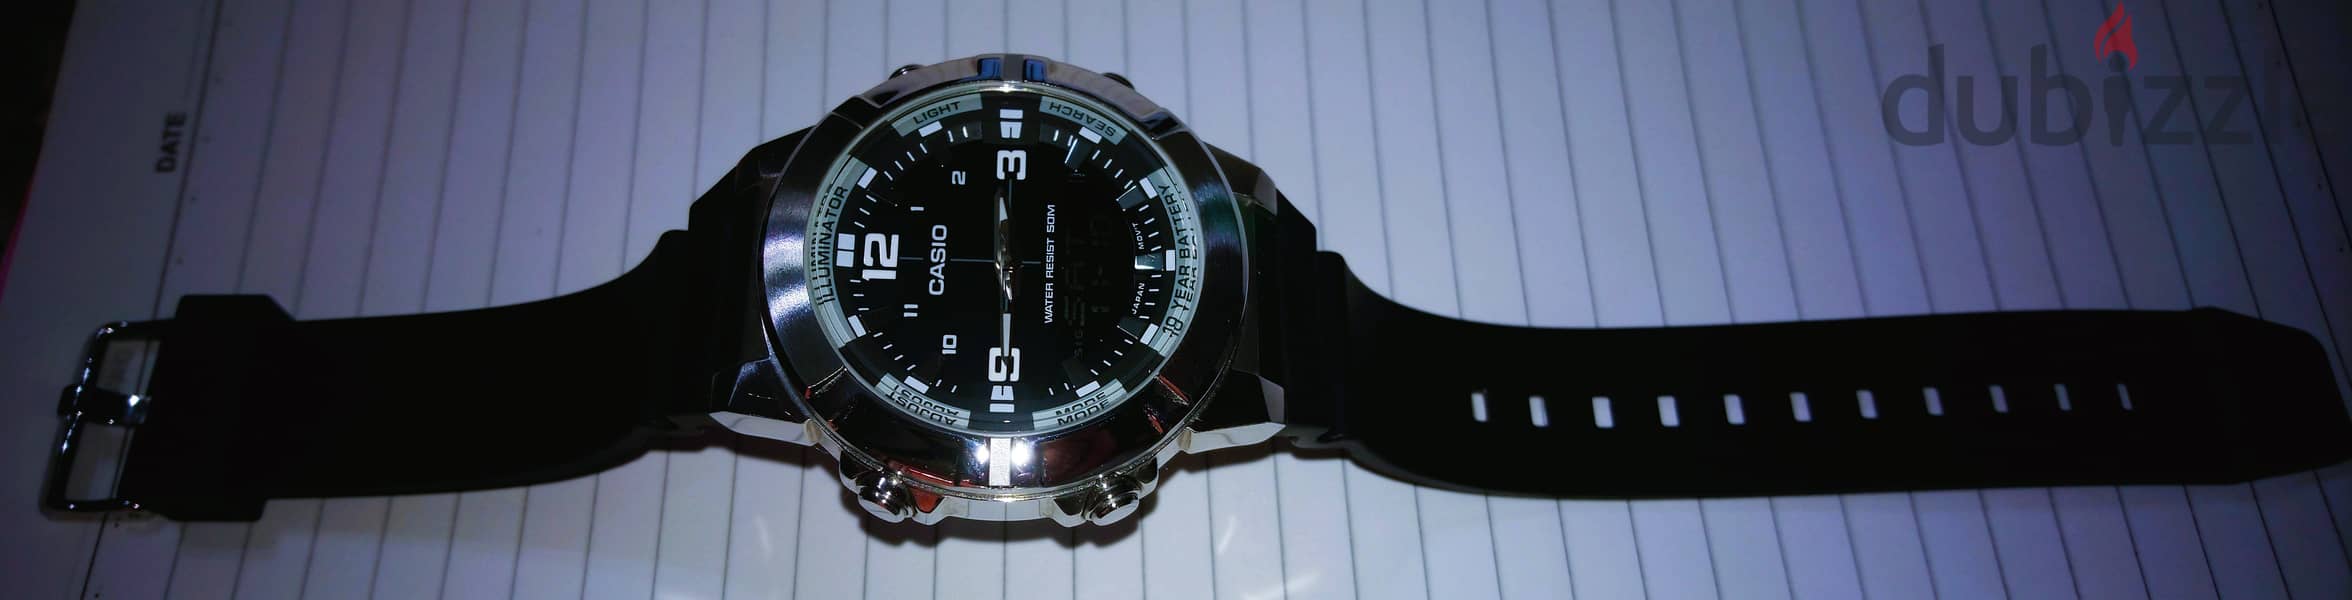 Casio watch awm870-1avdf analog + digital both in one، ساعه كاسيو 11